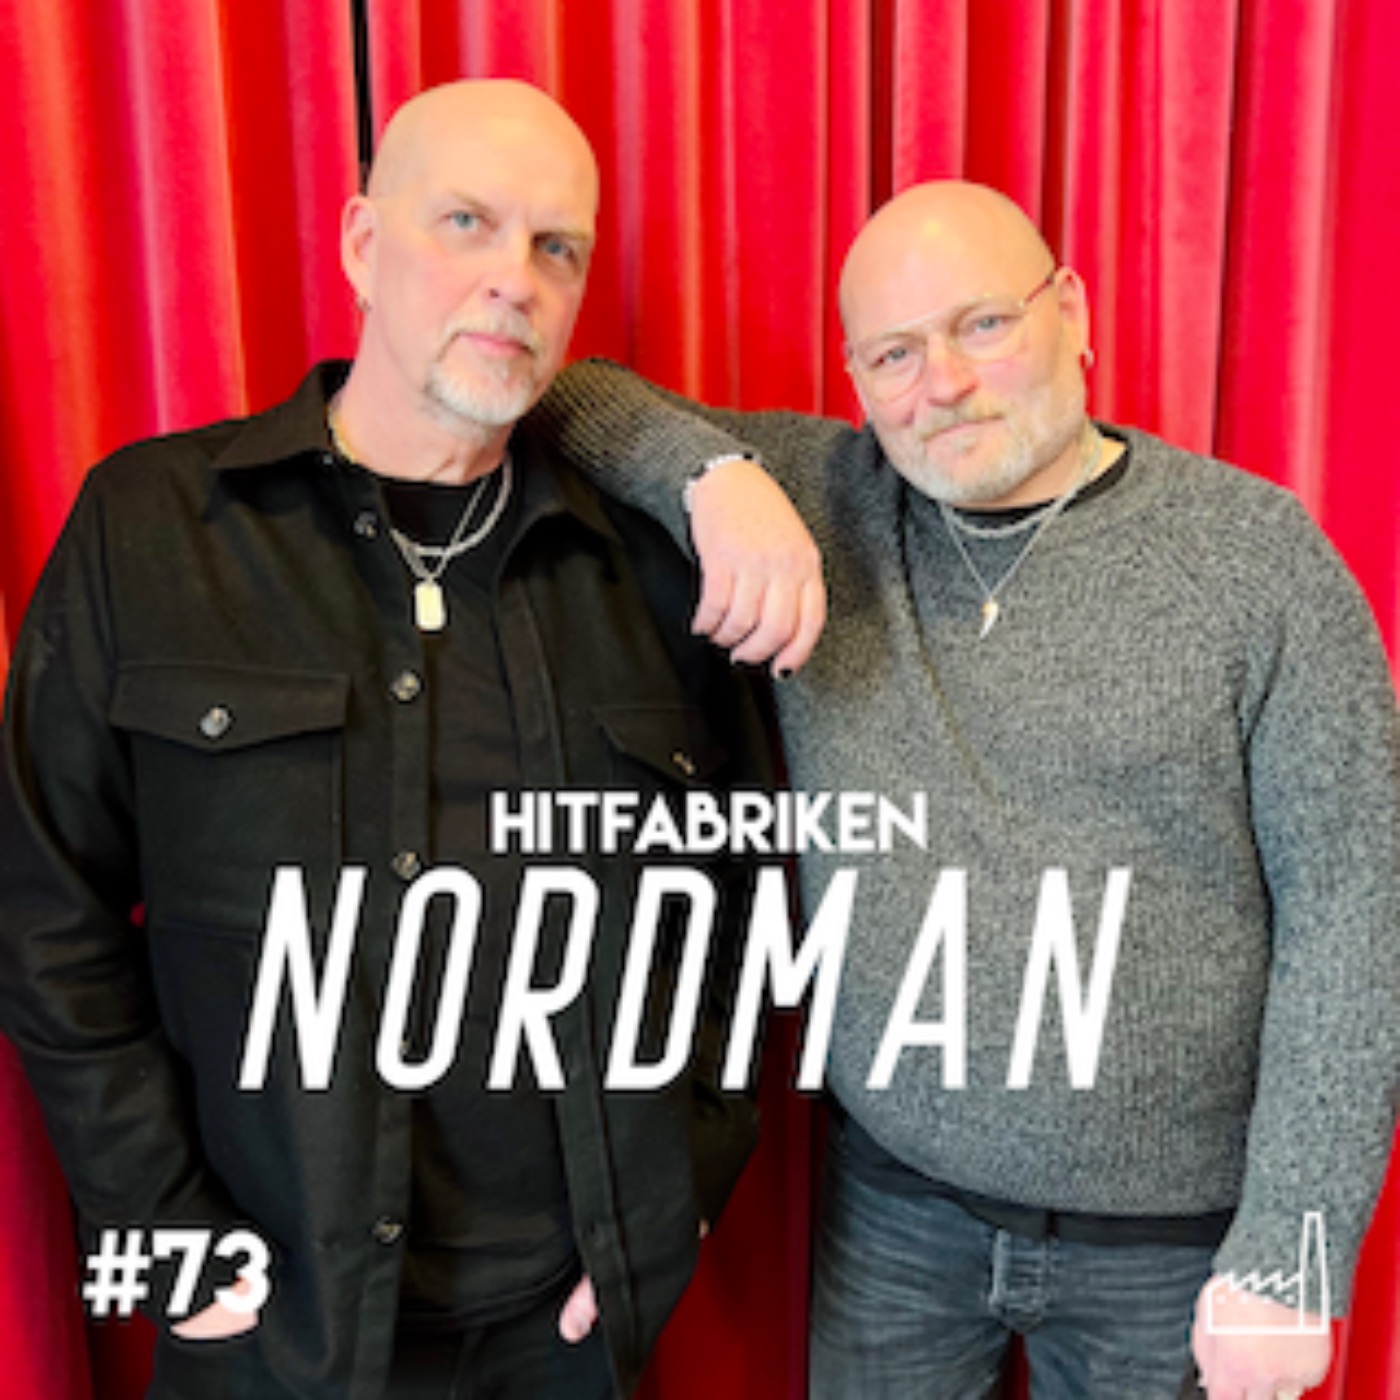 73. Nordman